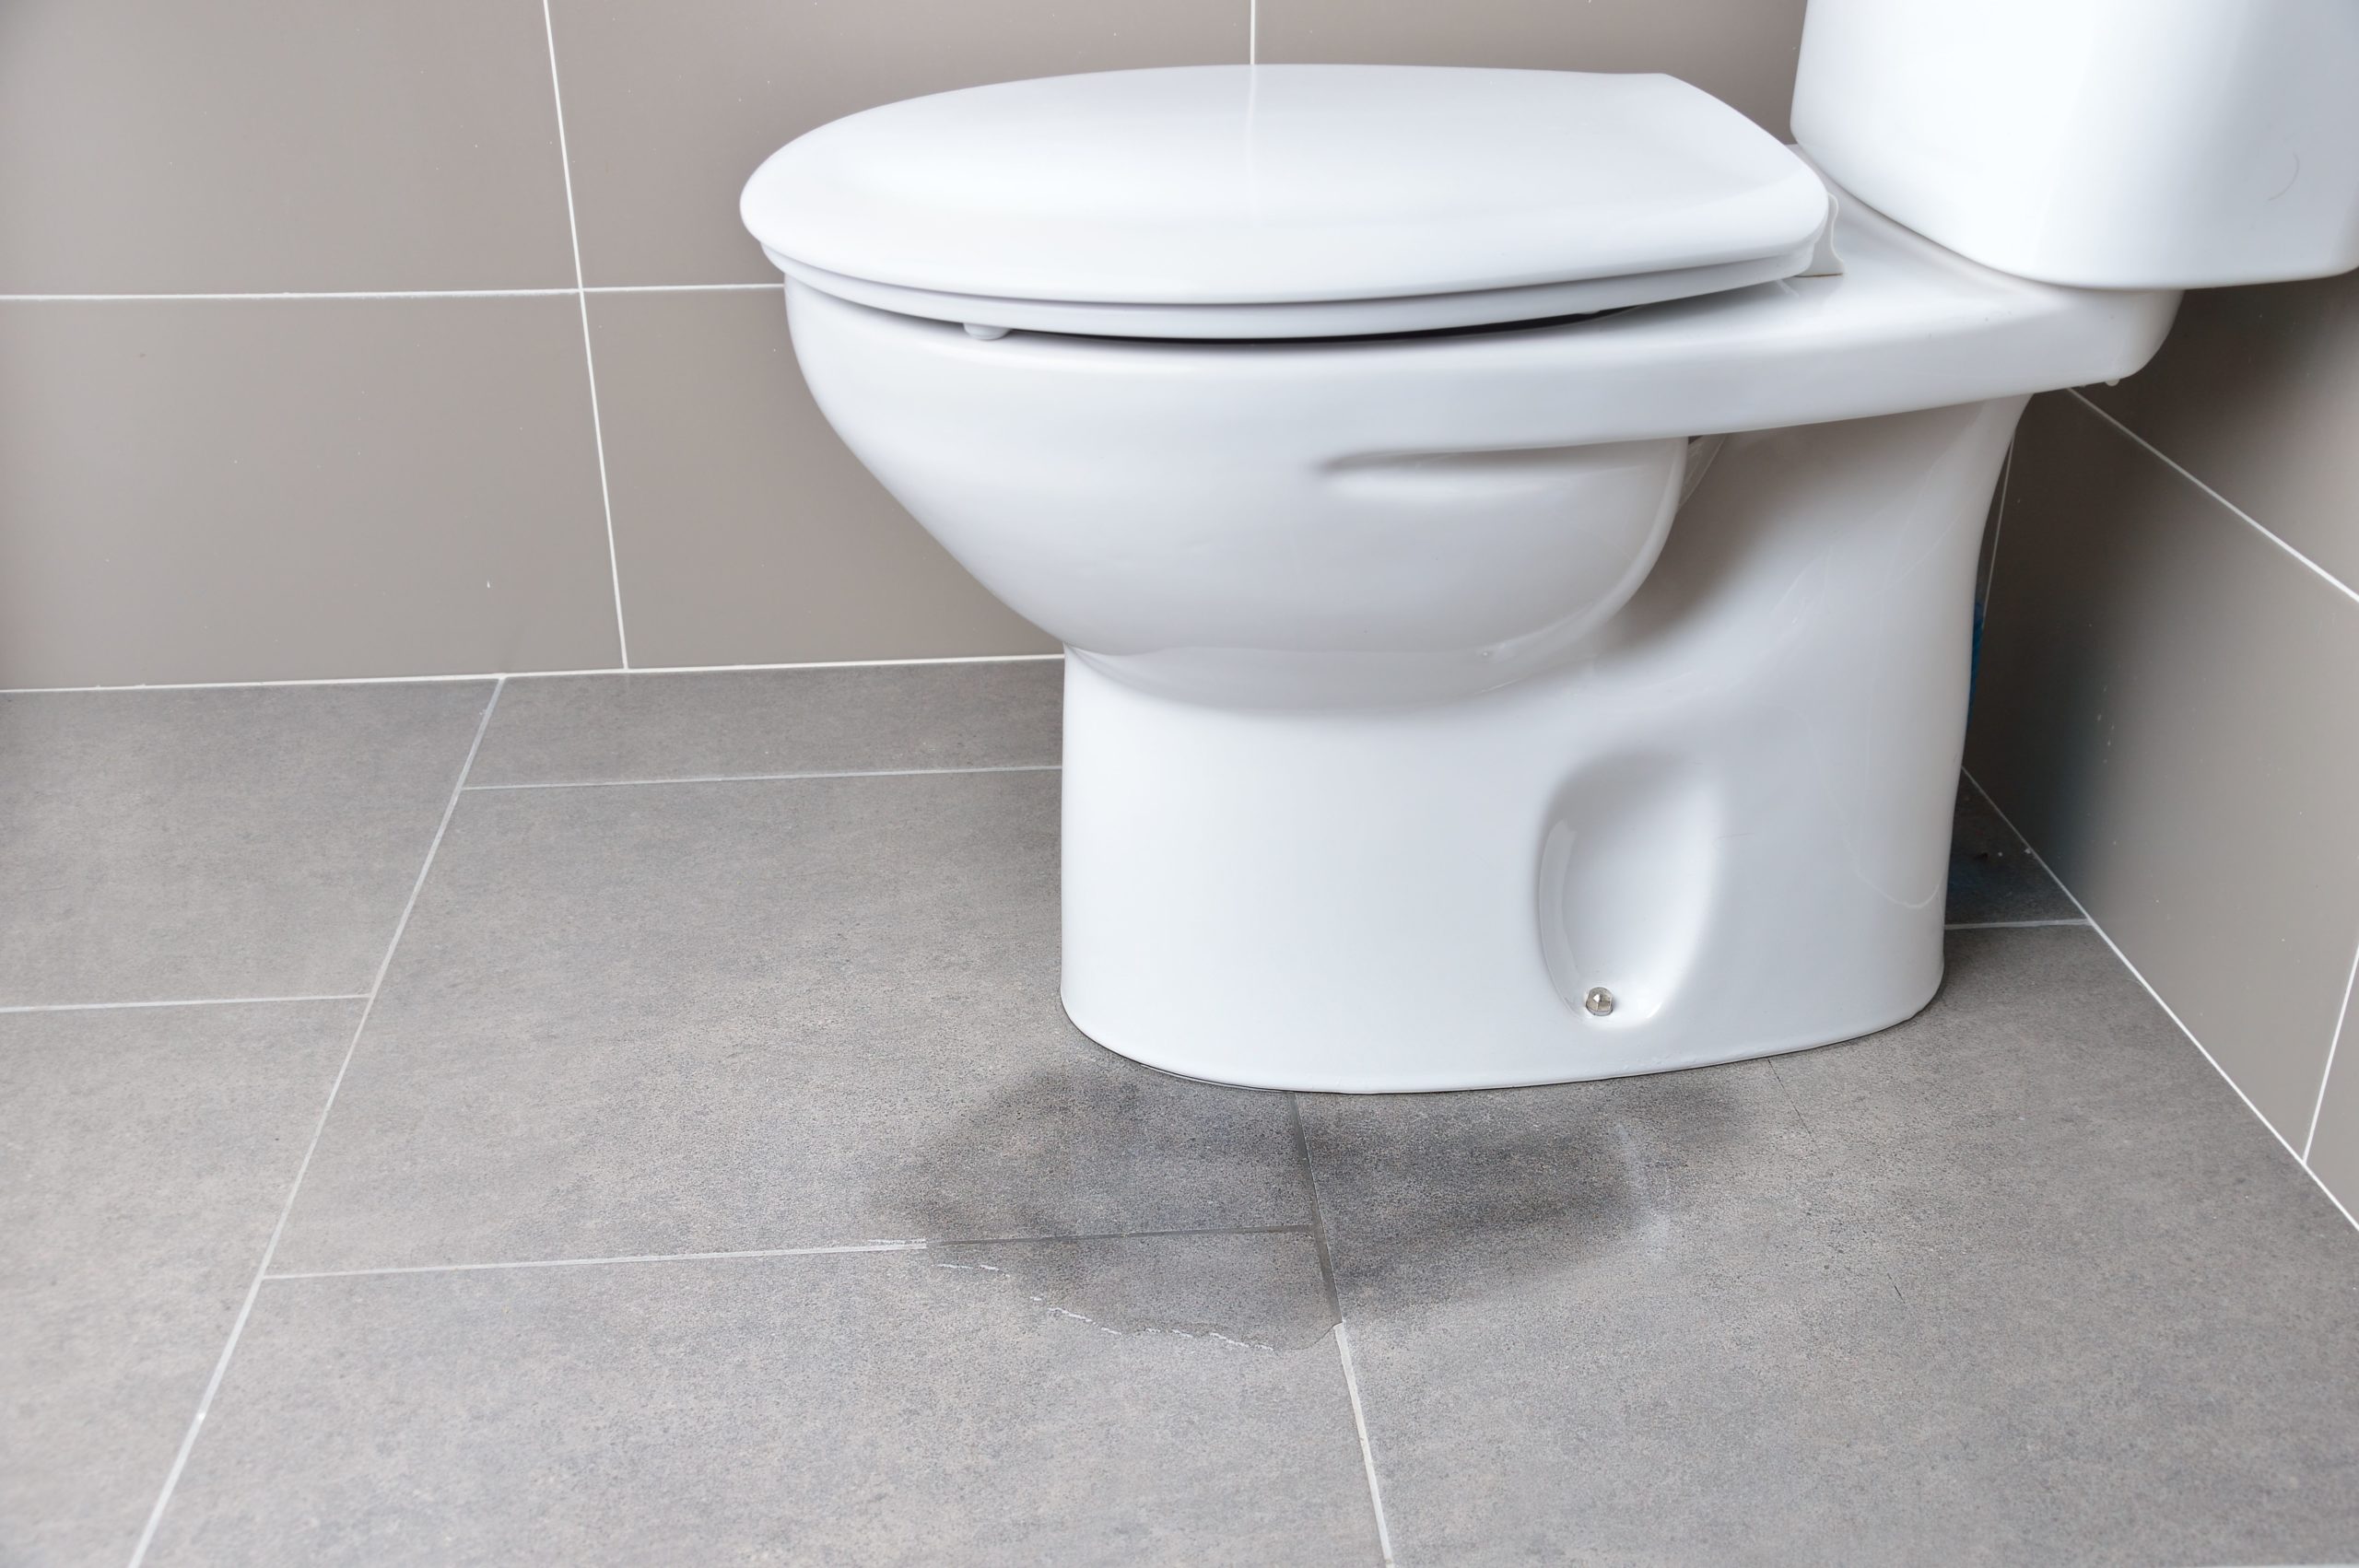 toilet leaks due to unkonwn reason